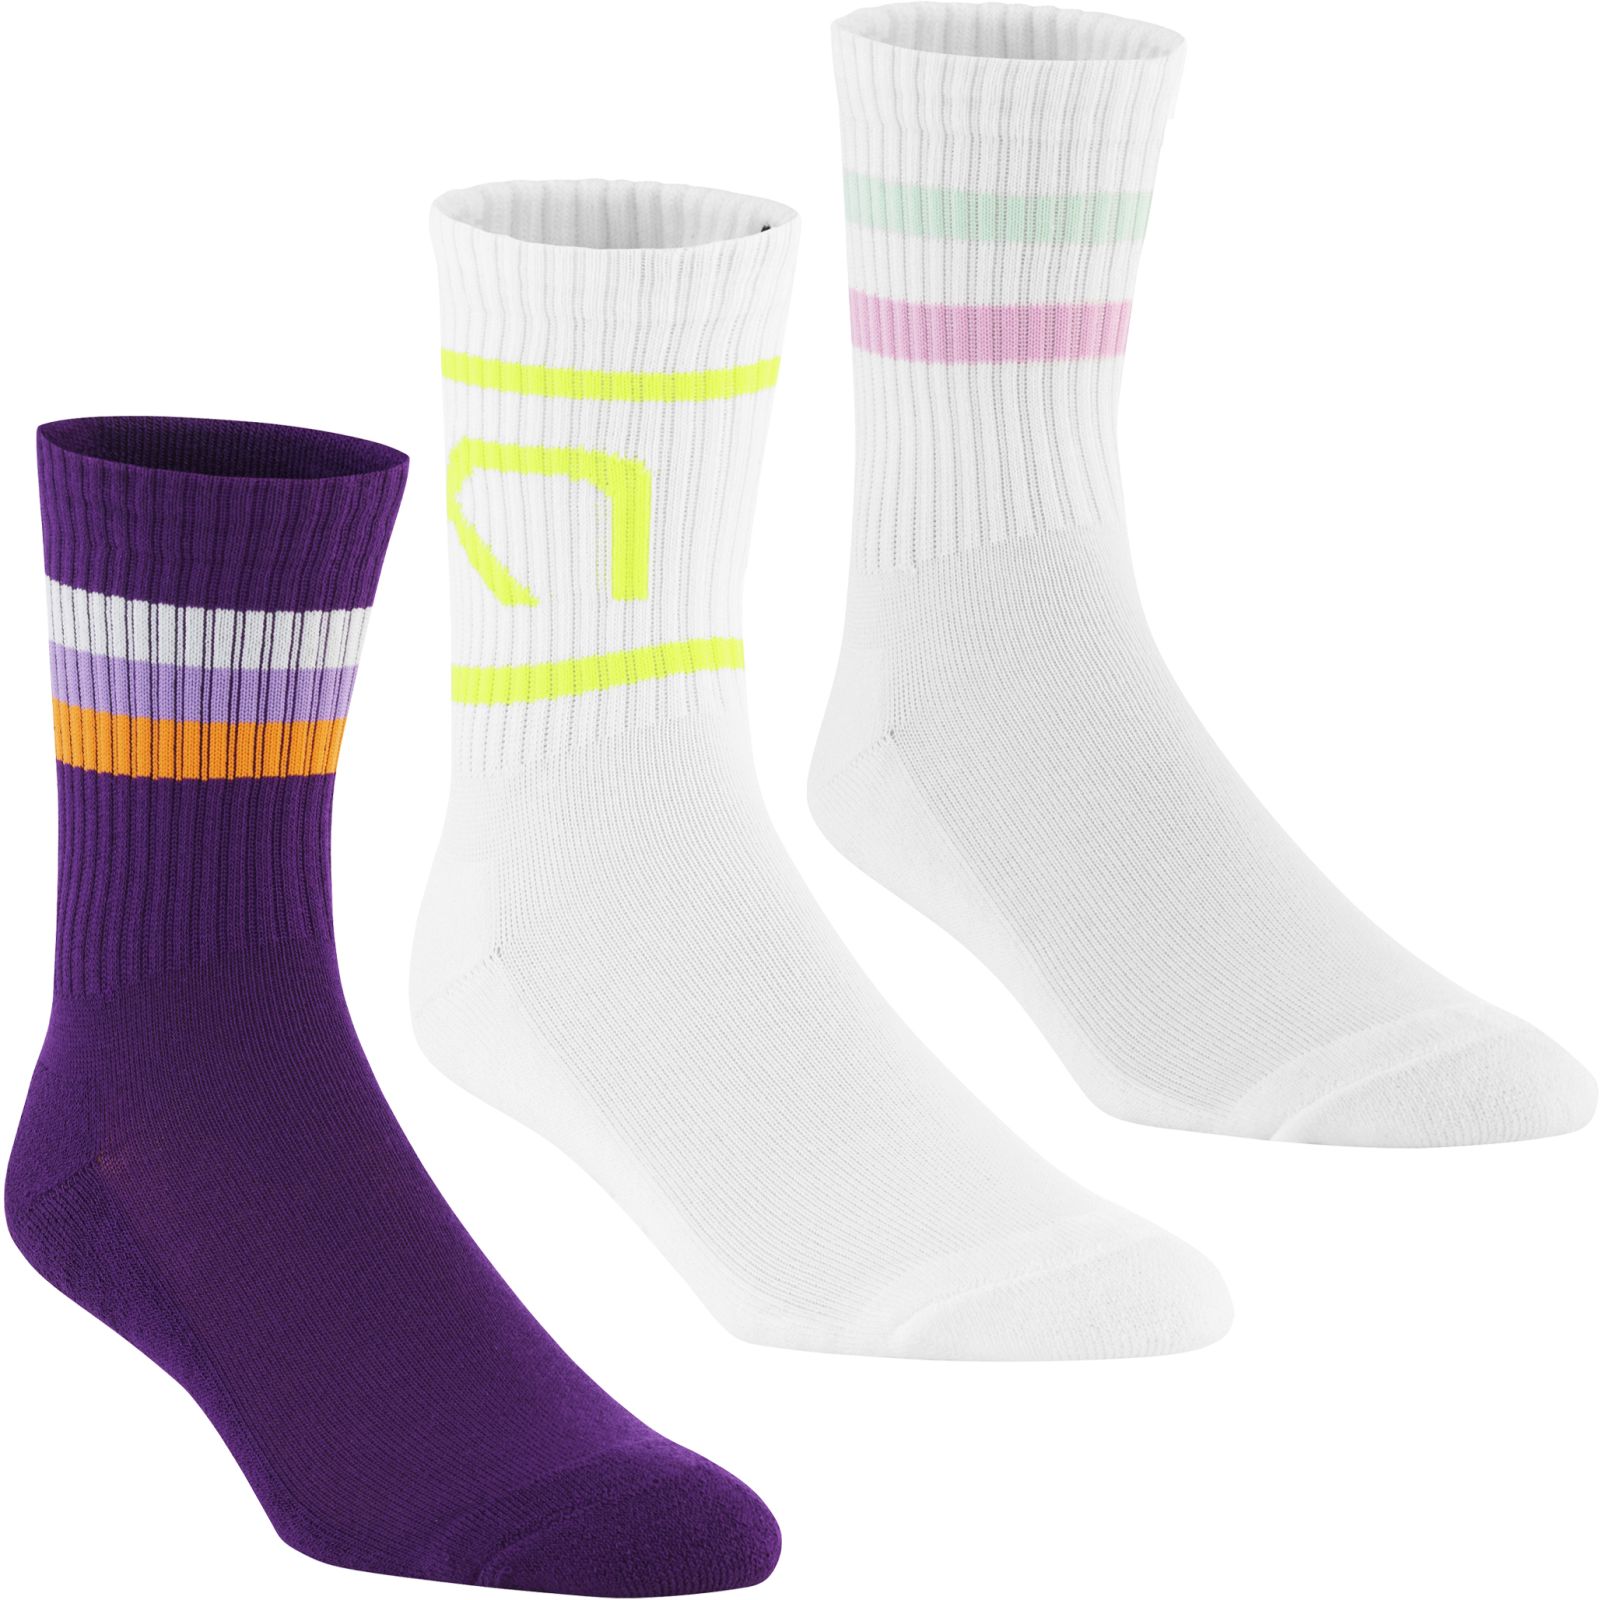 Women's sports socks